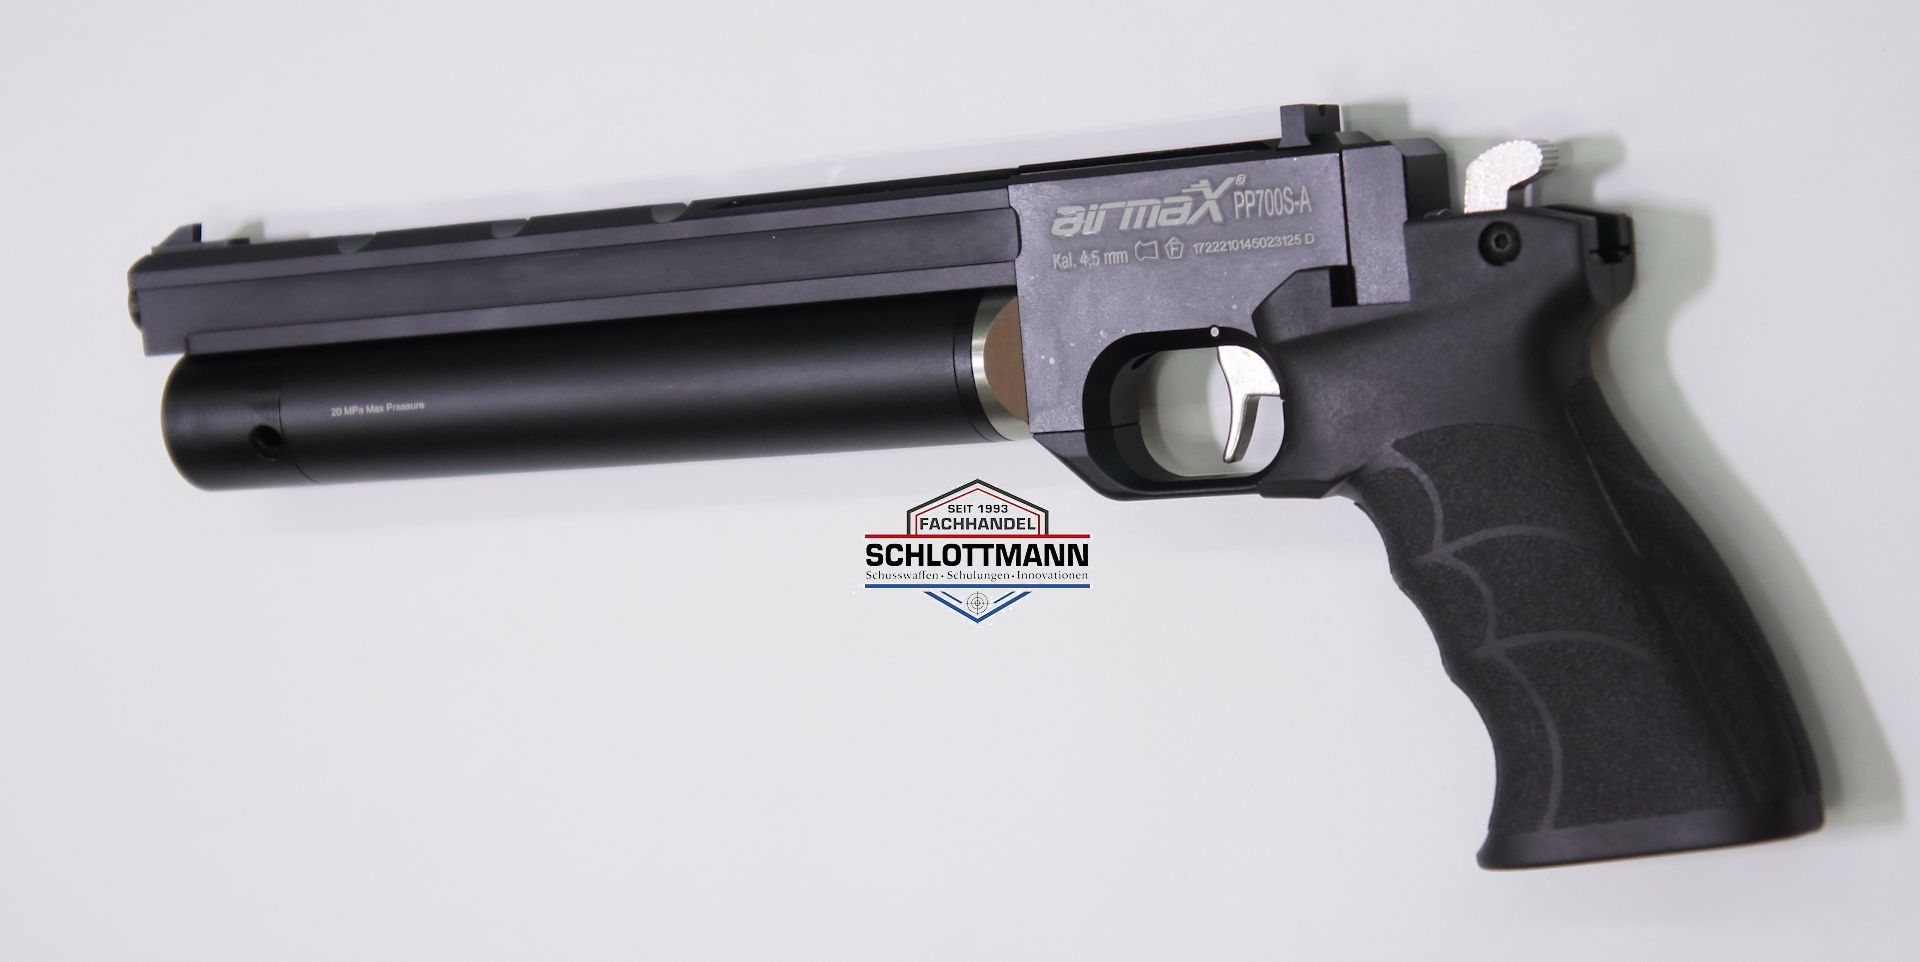 Der Hersteller kombiniert in der Luftpistole Diana PP700S gutes Design und Qualität zu einem unschlagbaren Preis.